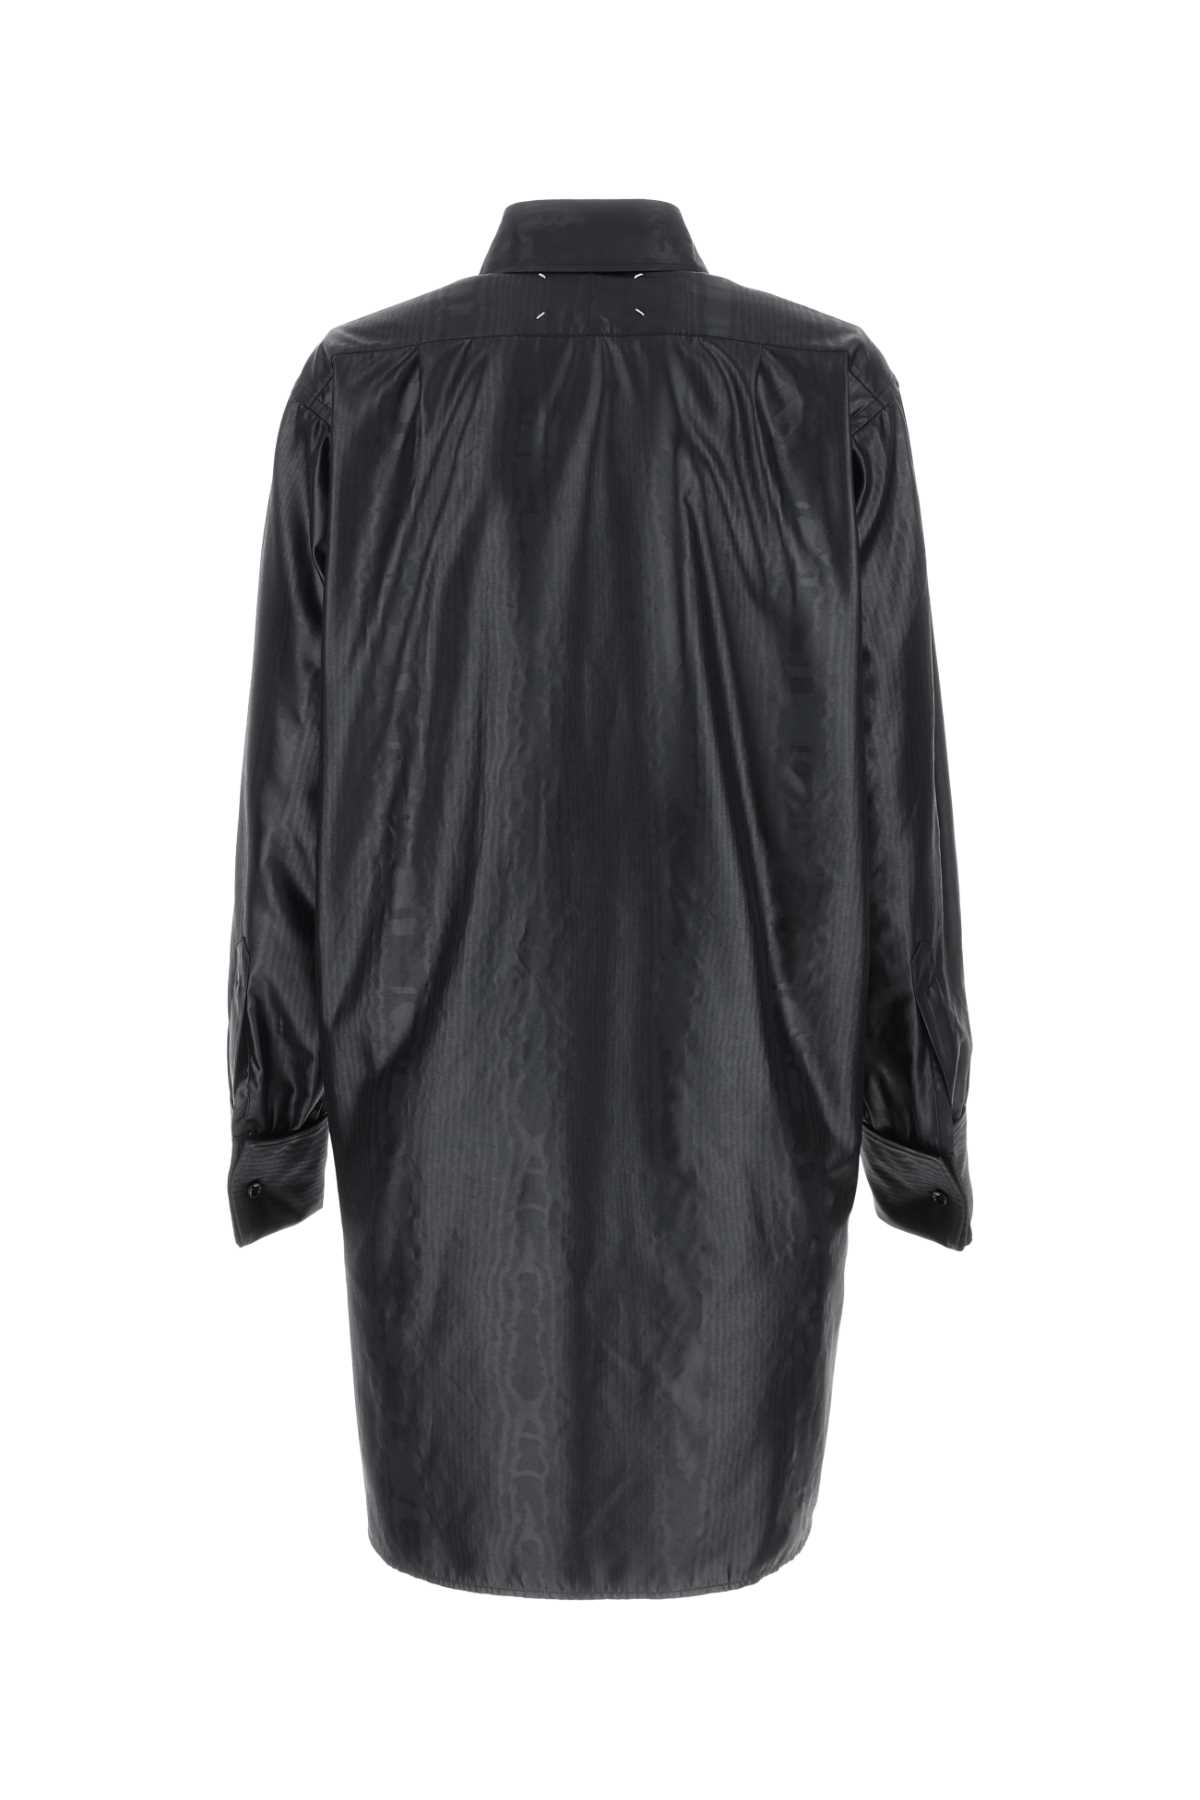 Maison Margiela Black Fabric Oversize Shirt In 900